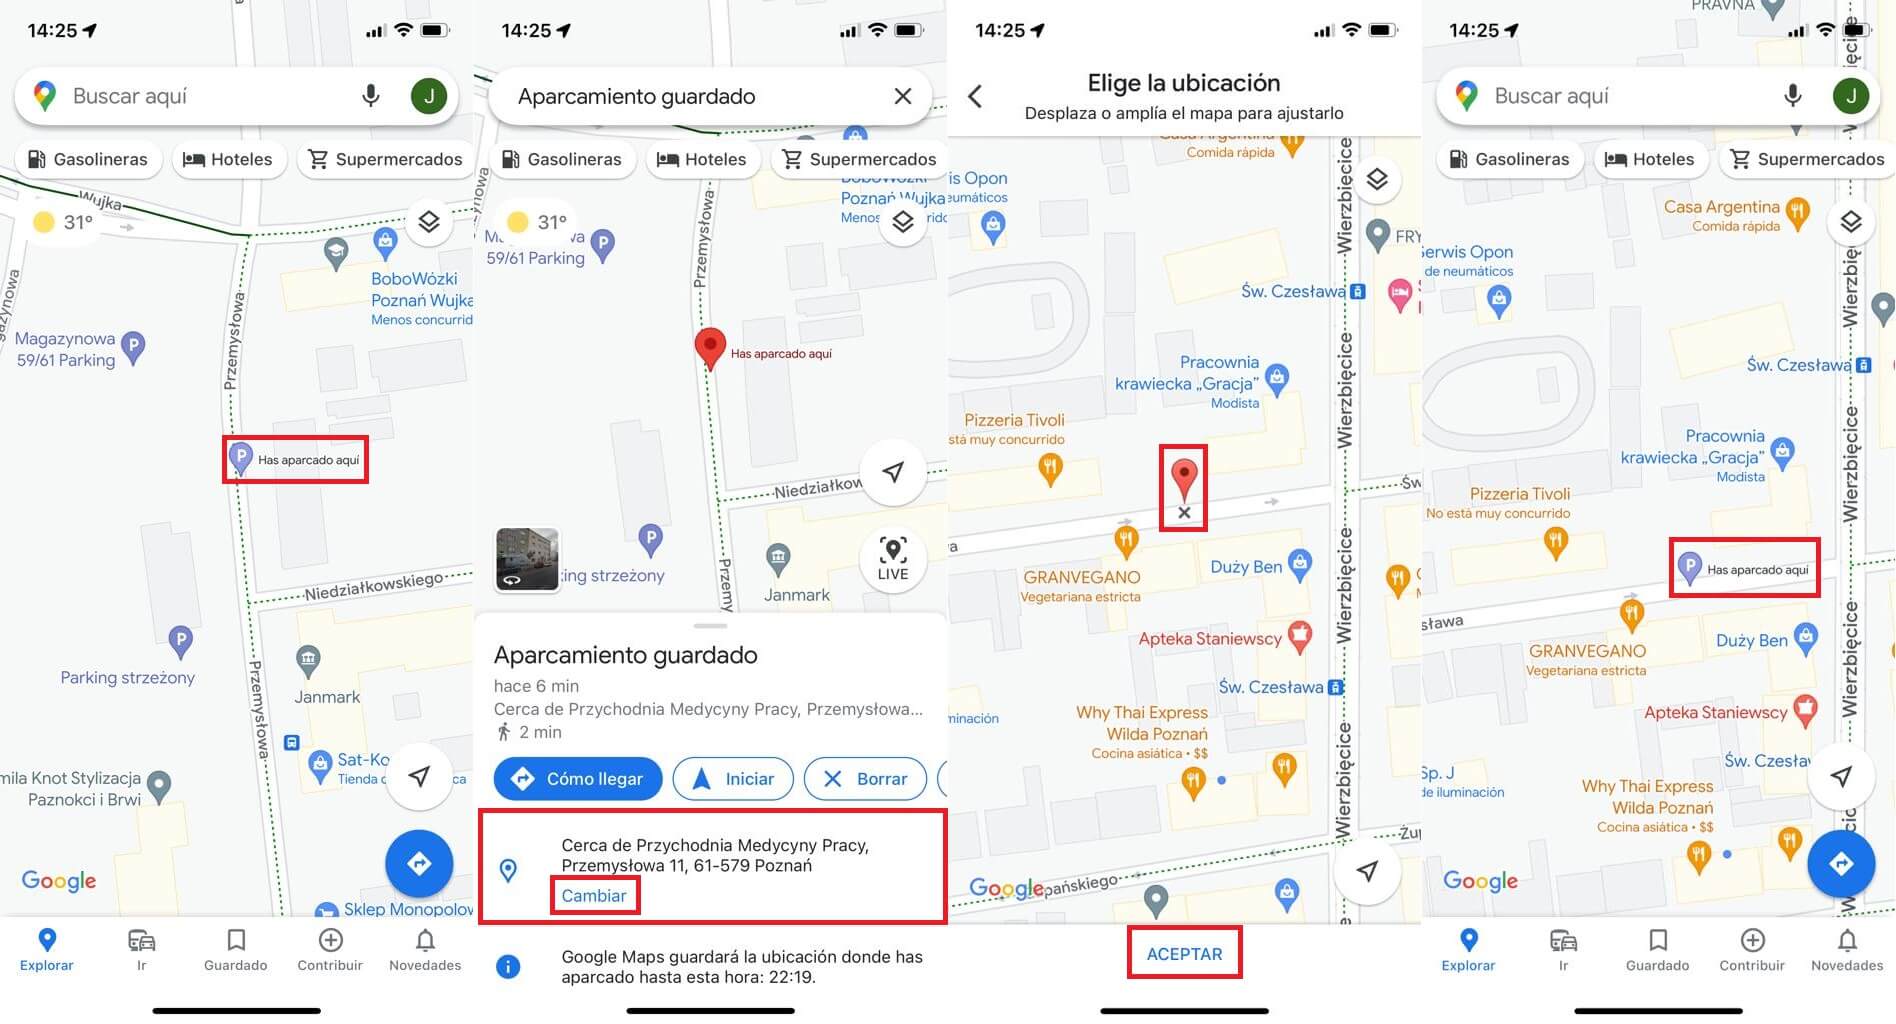 google maps permite guardar la ubicación en la que has aparcado tu coche